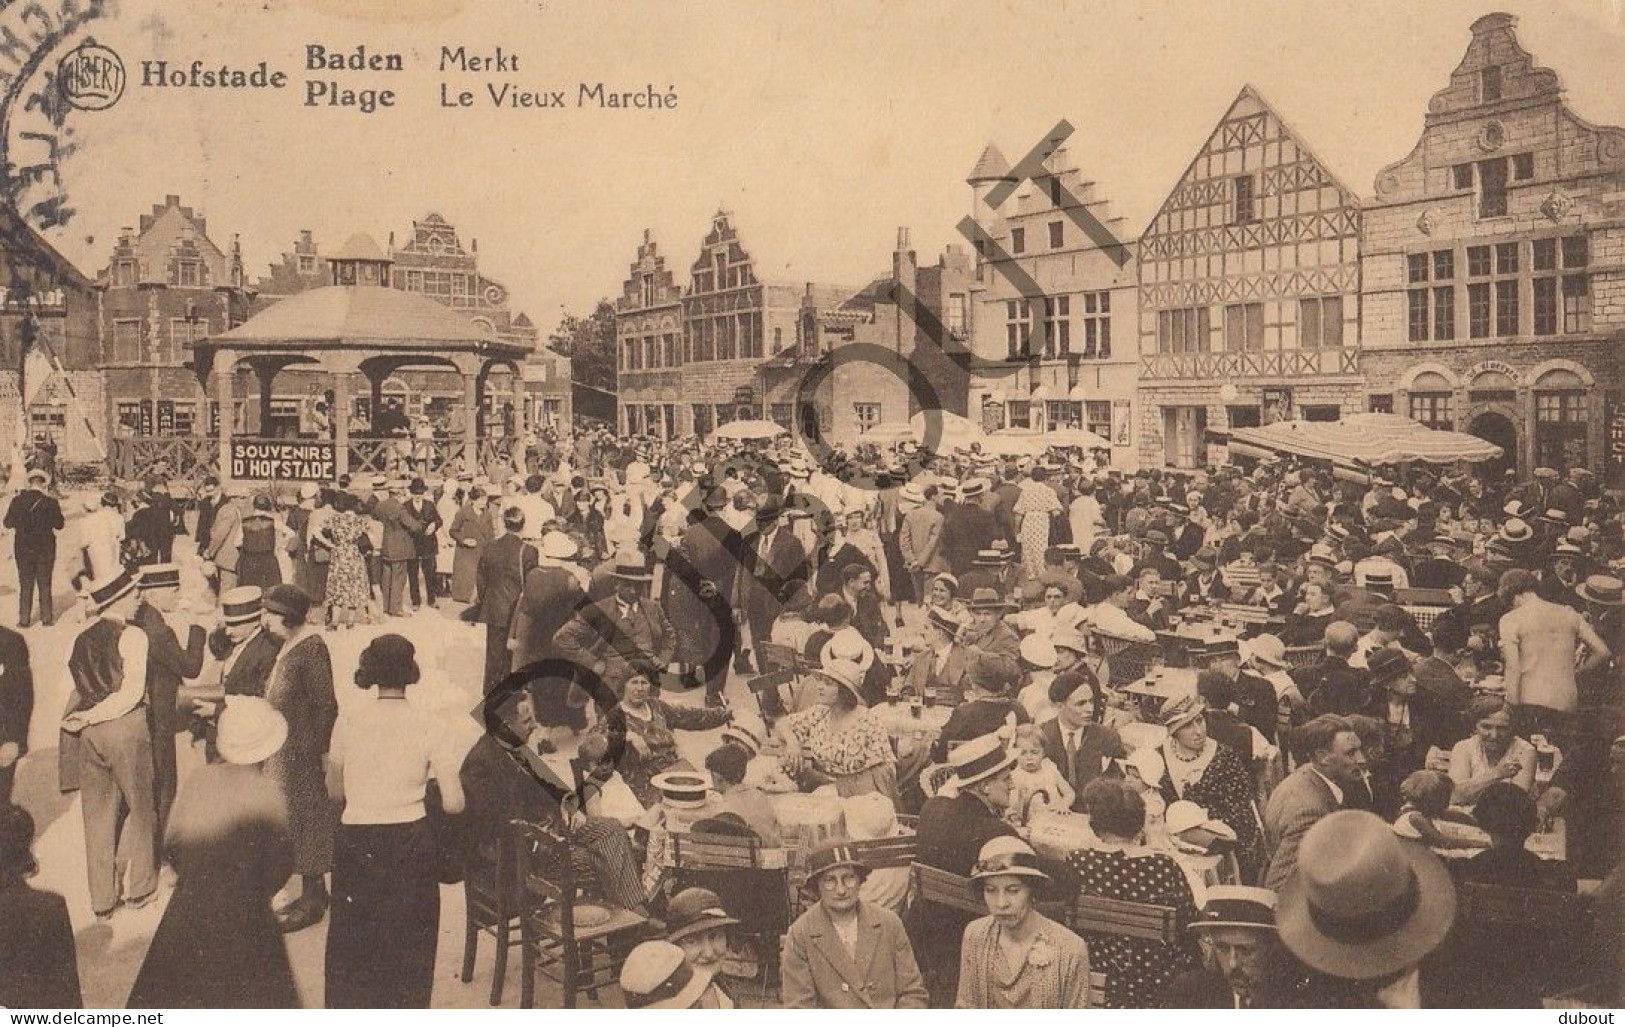 Postkaart/Carte Postale - Hofstade Baden - Markt   (C2885) - Zemst